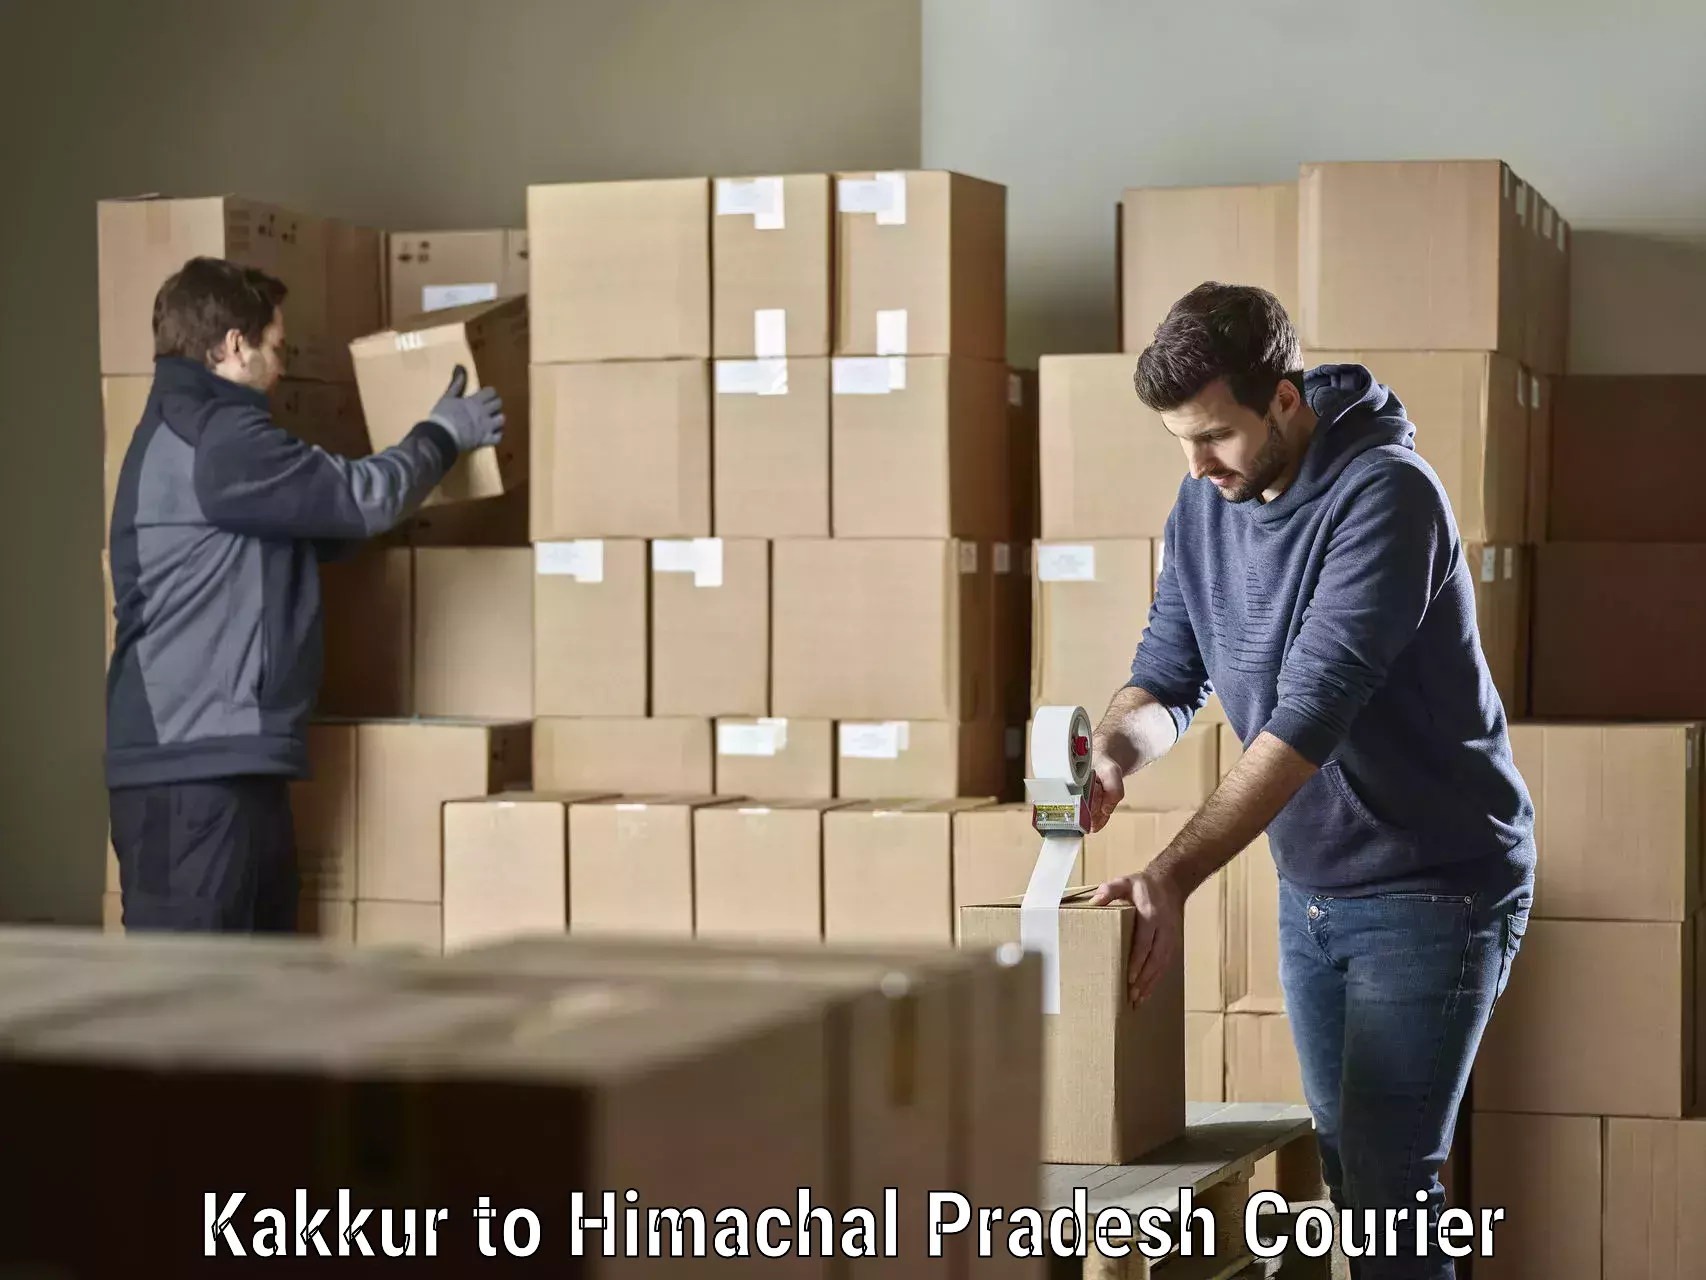 Pharmaceutical courier Kakkur to Himachal Pradesh